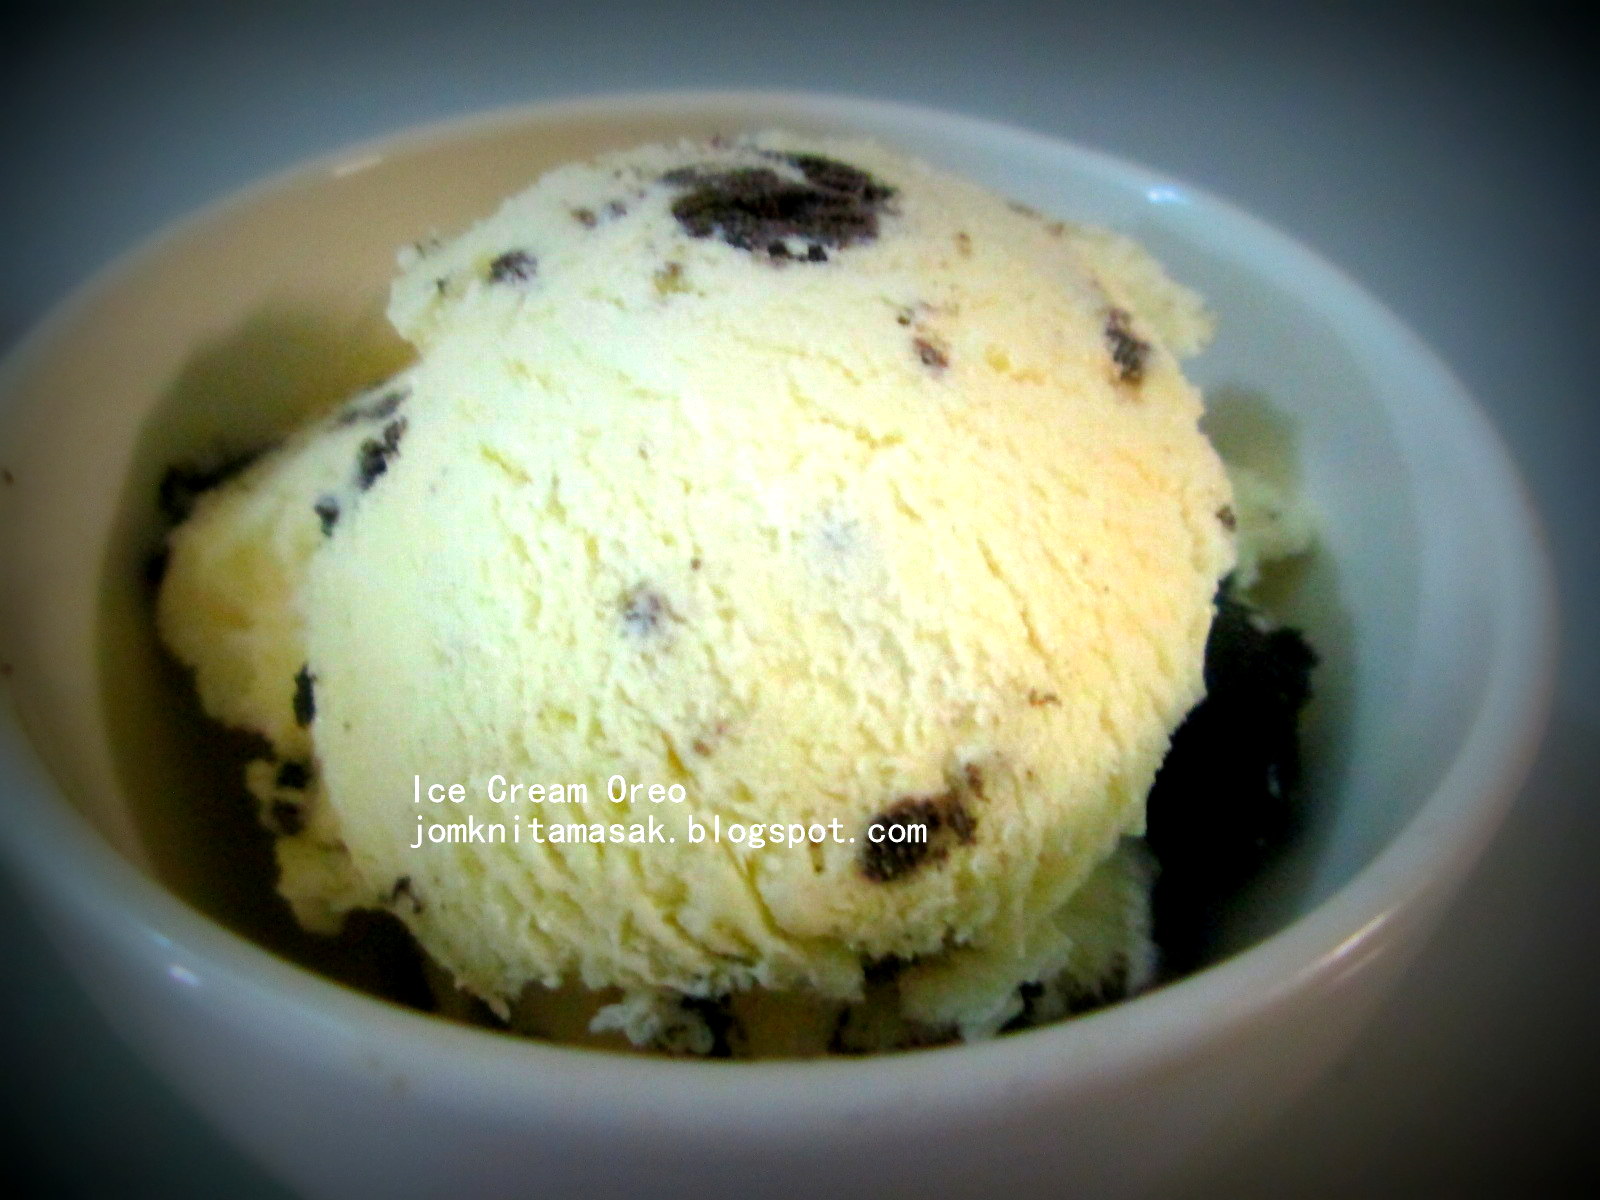 Jom Kak Nita Masak: Homemade Ice Cream Oreo